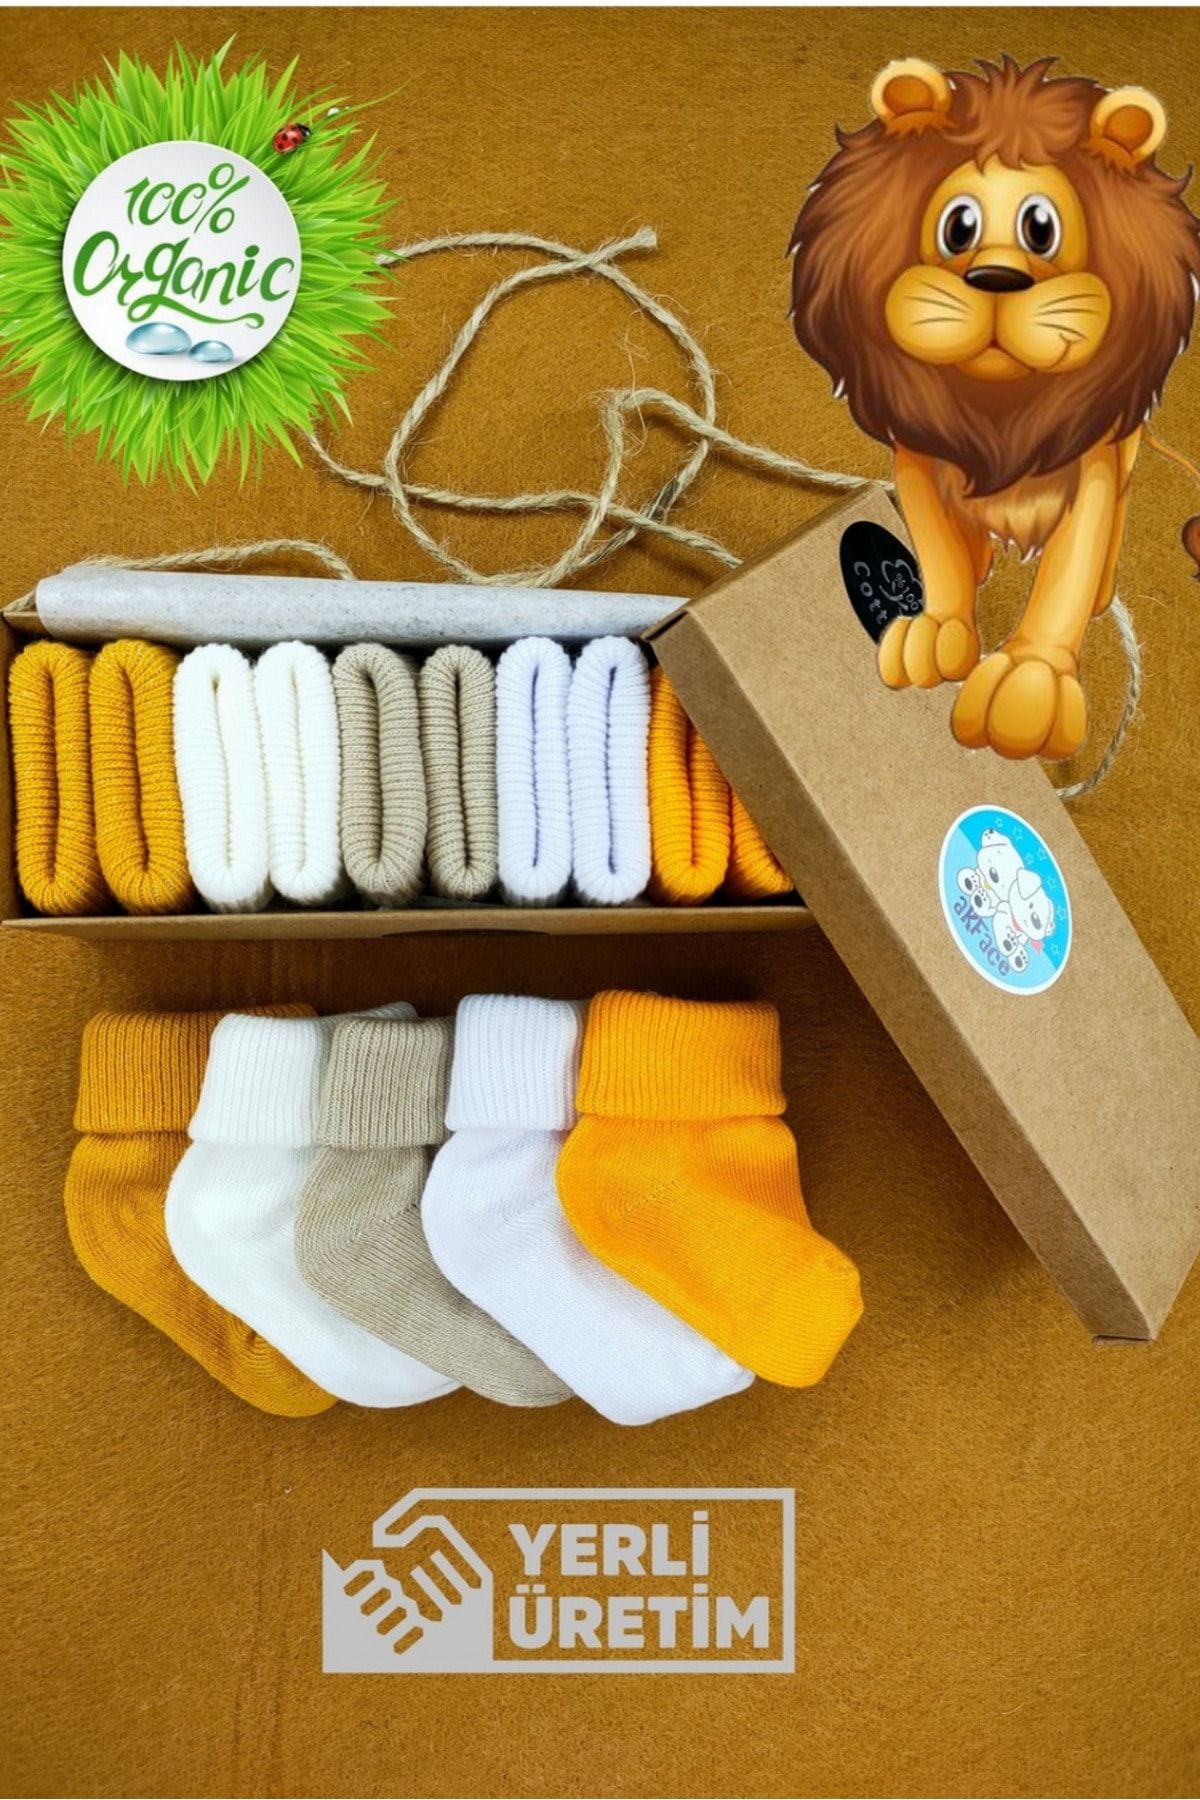 Akface Organik 5'l Kutulu Safari Renklerde Unisex Yeni Doğan Ve Bebek Çorabı 0-2 Yaş